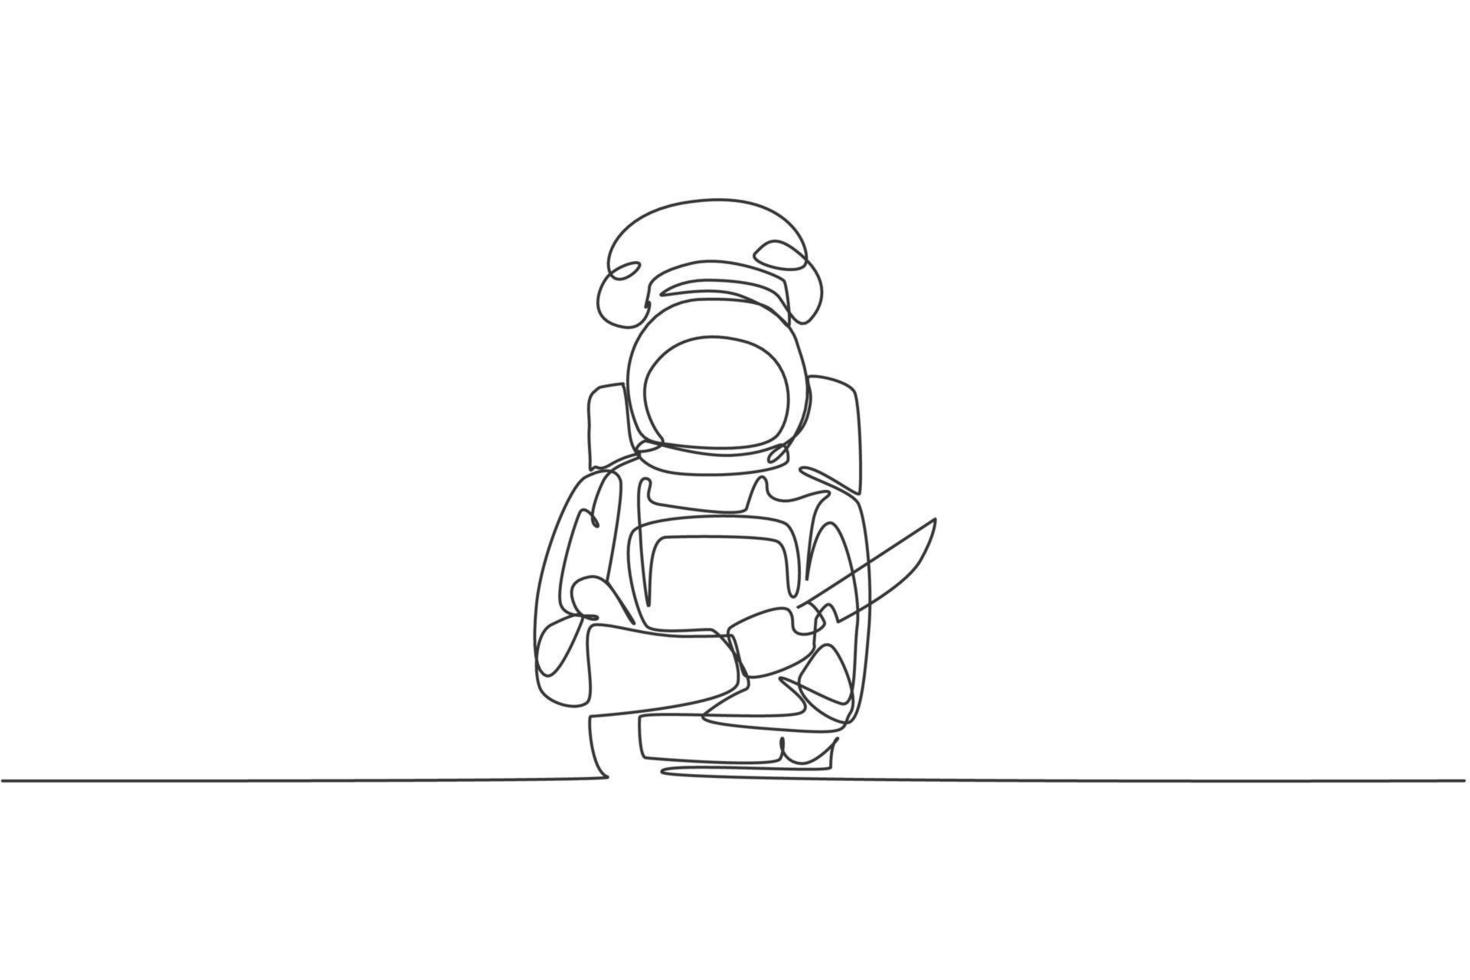 Chef astronauta de dibujo de línea continua única sosteniendo un cuchillo y cruzando los brazos sobre el pecho en la cafetería del espacio exterior. concepto de cocina de restaurante saludable. Ilustración de vector gráfico de diseño de dibujo de una línea de moda